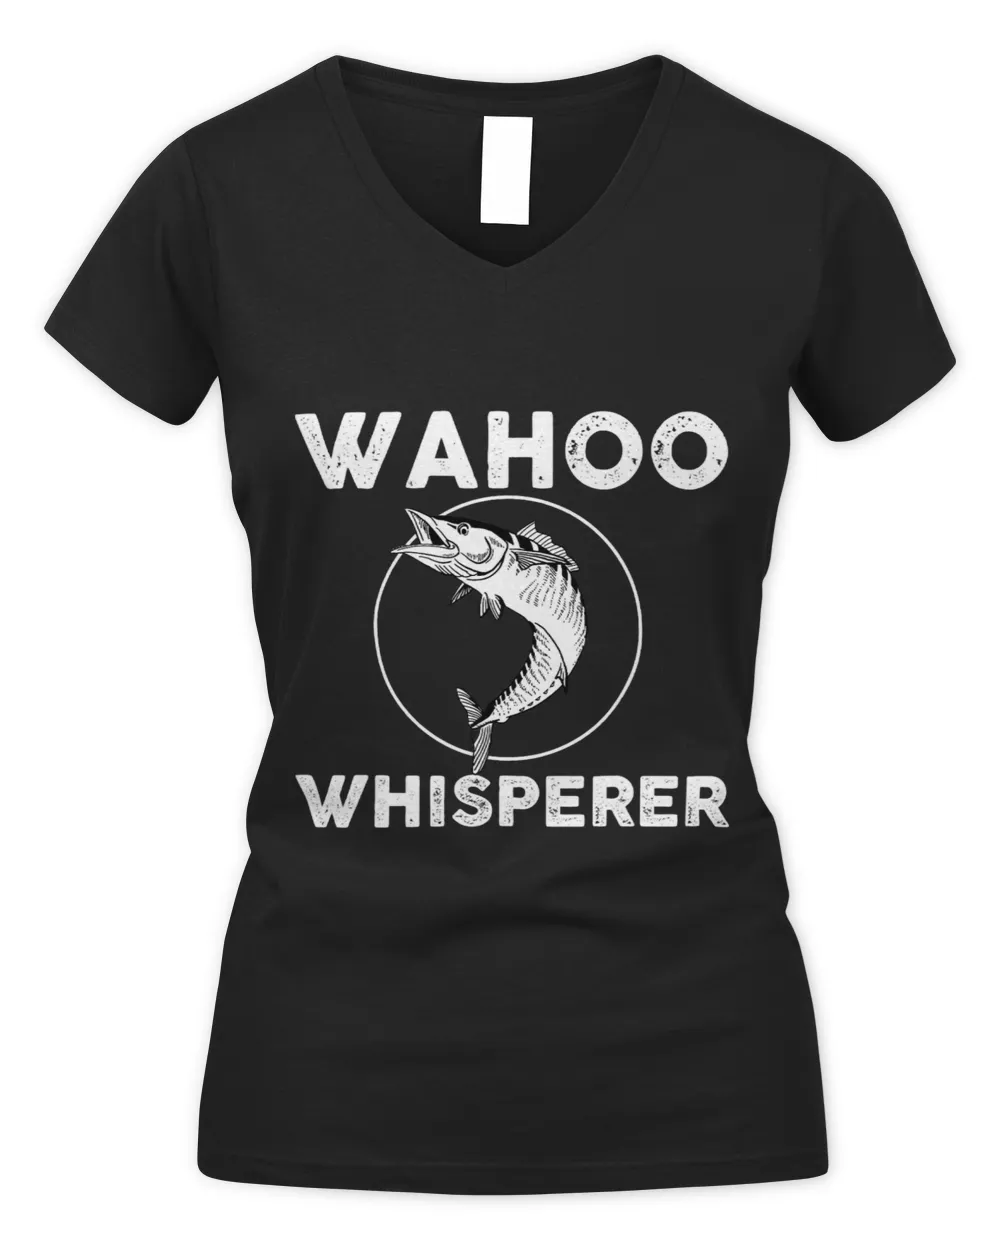 Wahoo Whisperer Design Saltwater Fish Game Fishing